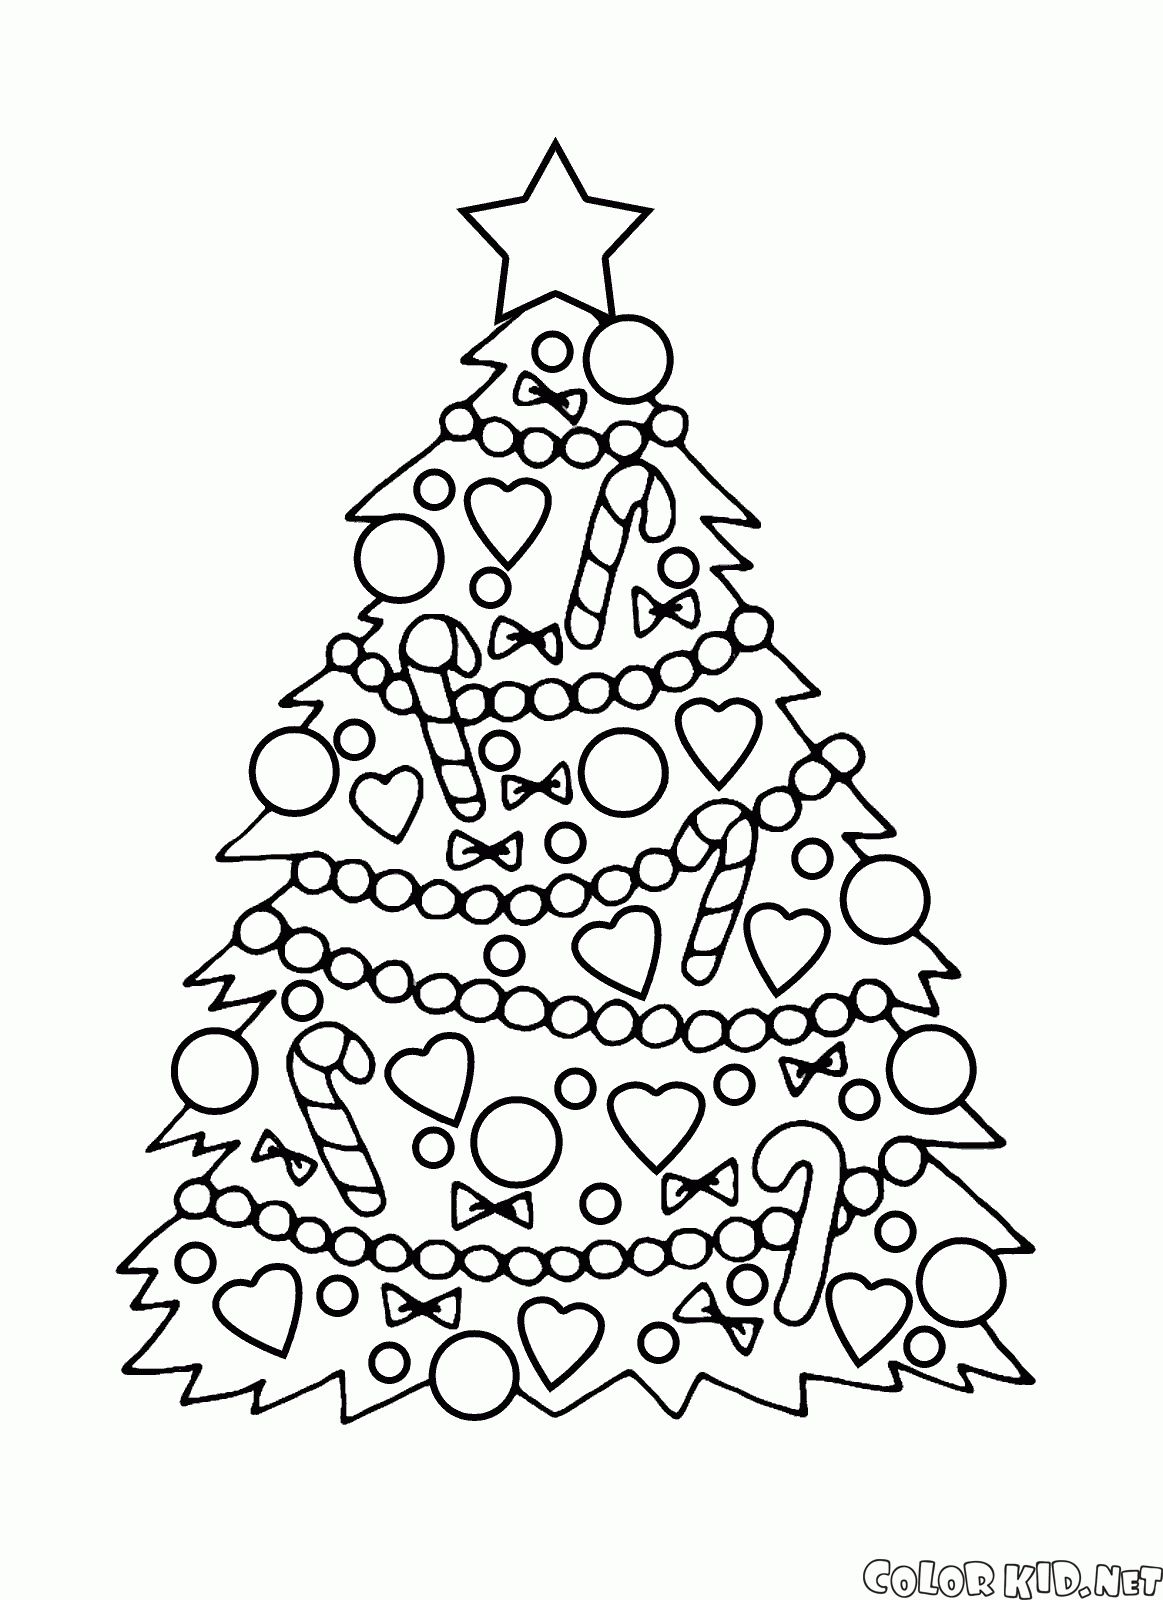 Dibujo Para Colorear Arbol De Navidad Con Adornos